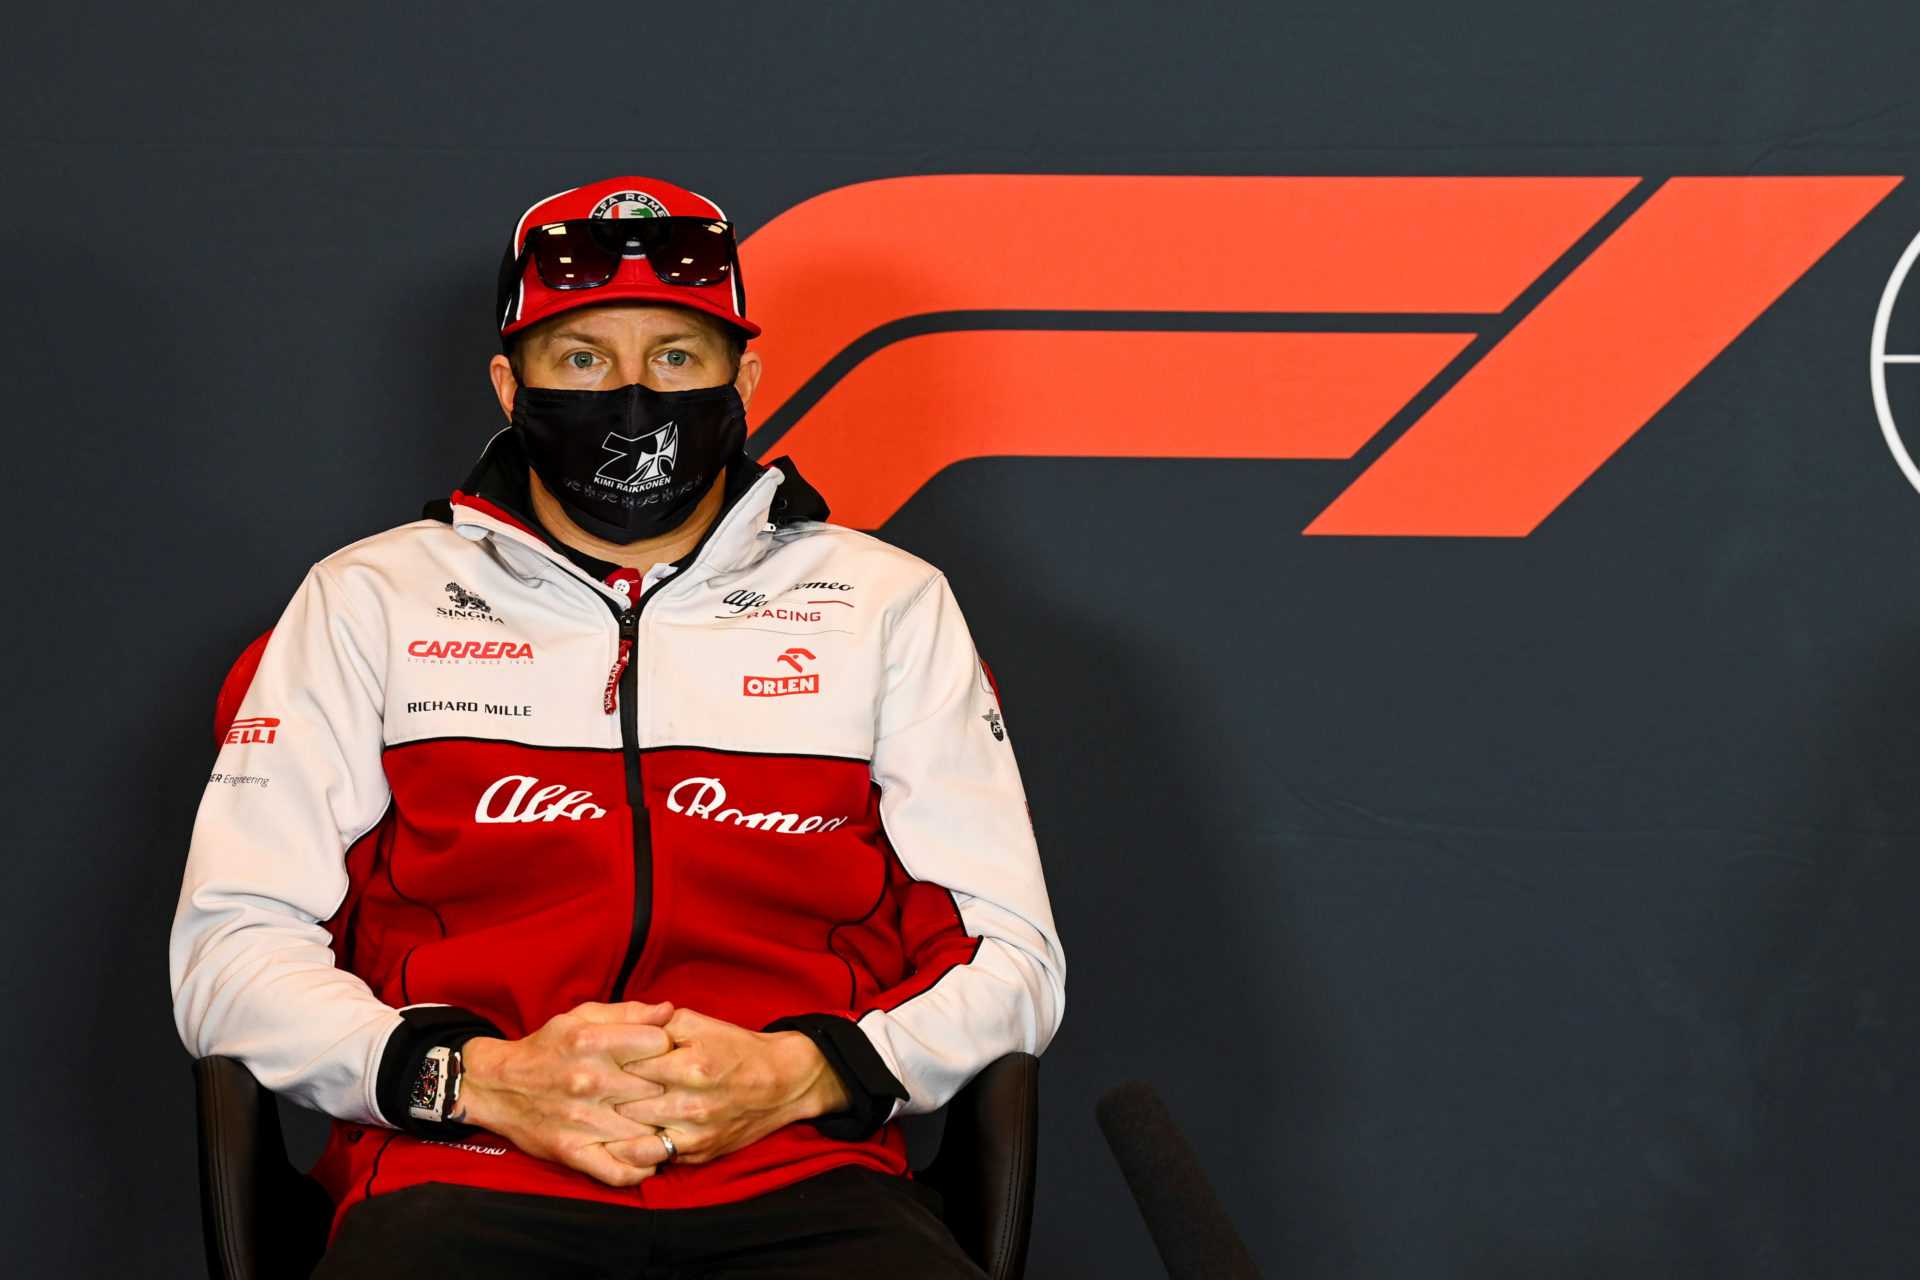 REGARDER: Kimi Raikkonen et son ingénieur sarcastique sur le crash de Russell à Imola